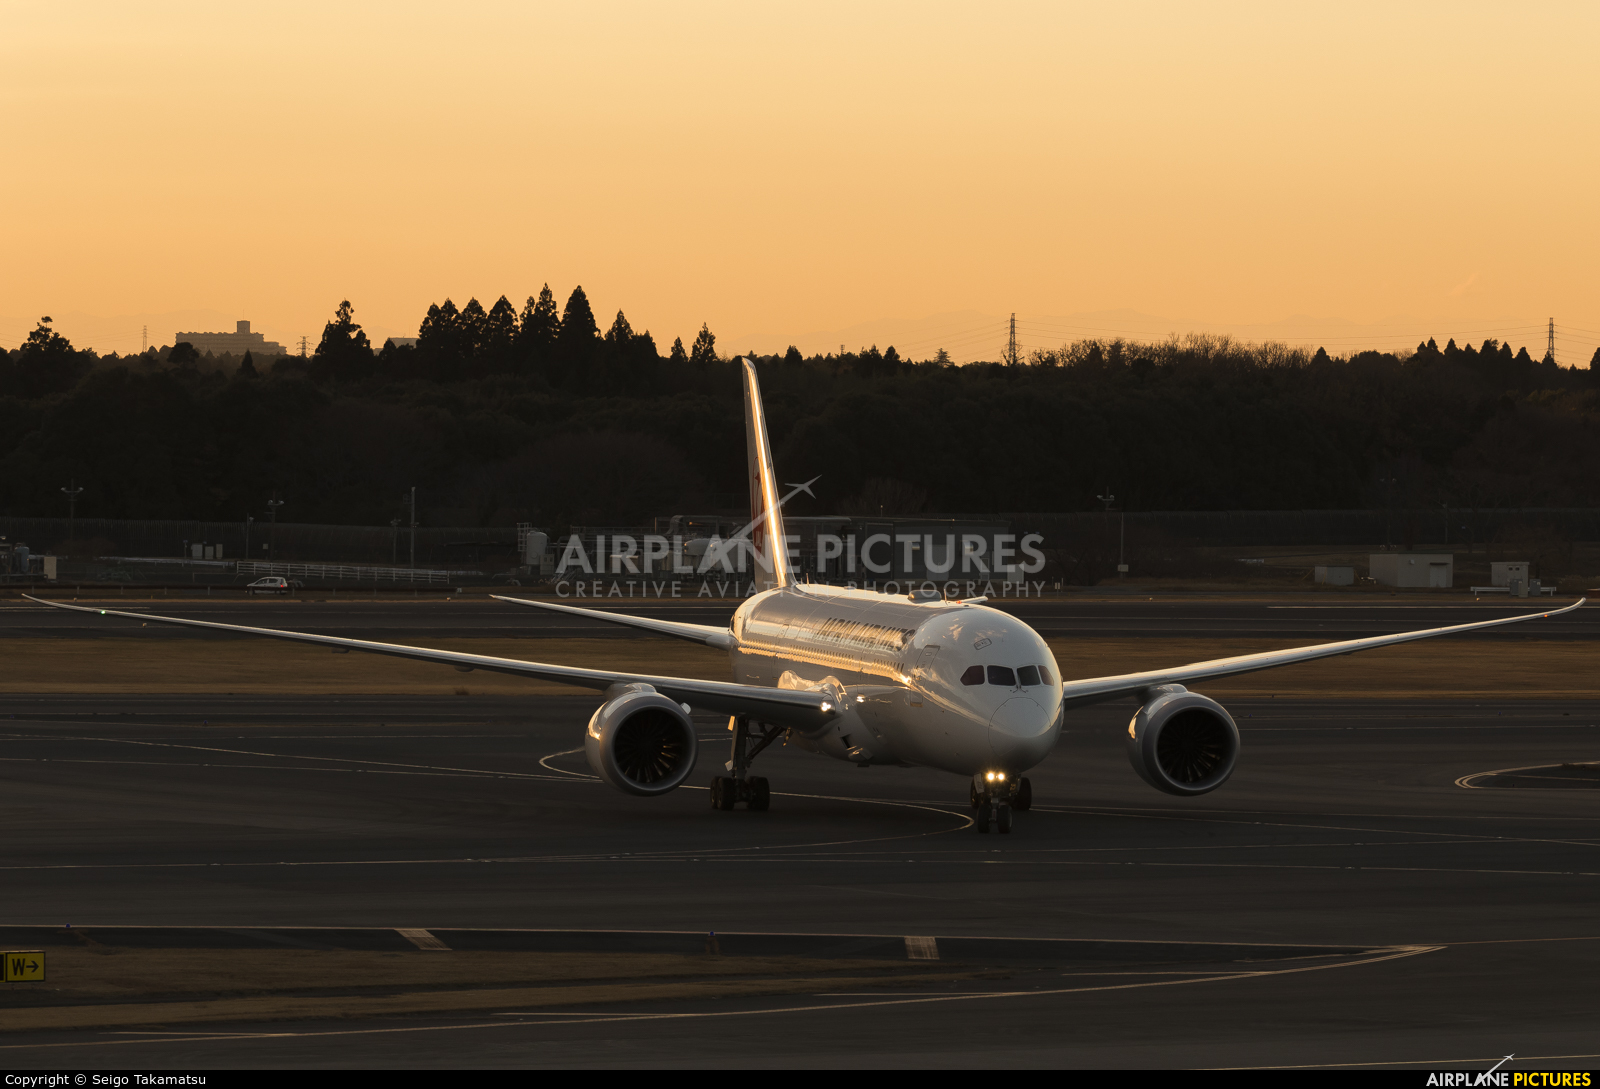 JAL - Japan Airlines JA839J aircraft at Tokyo - Narita Intl